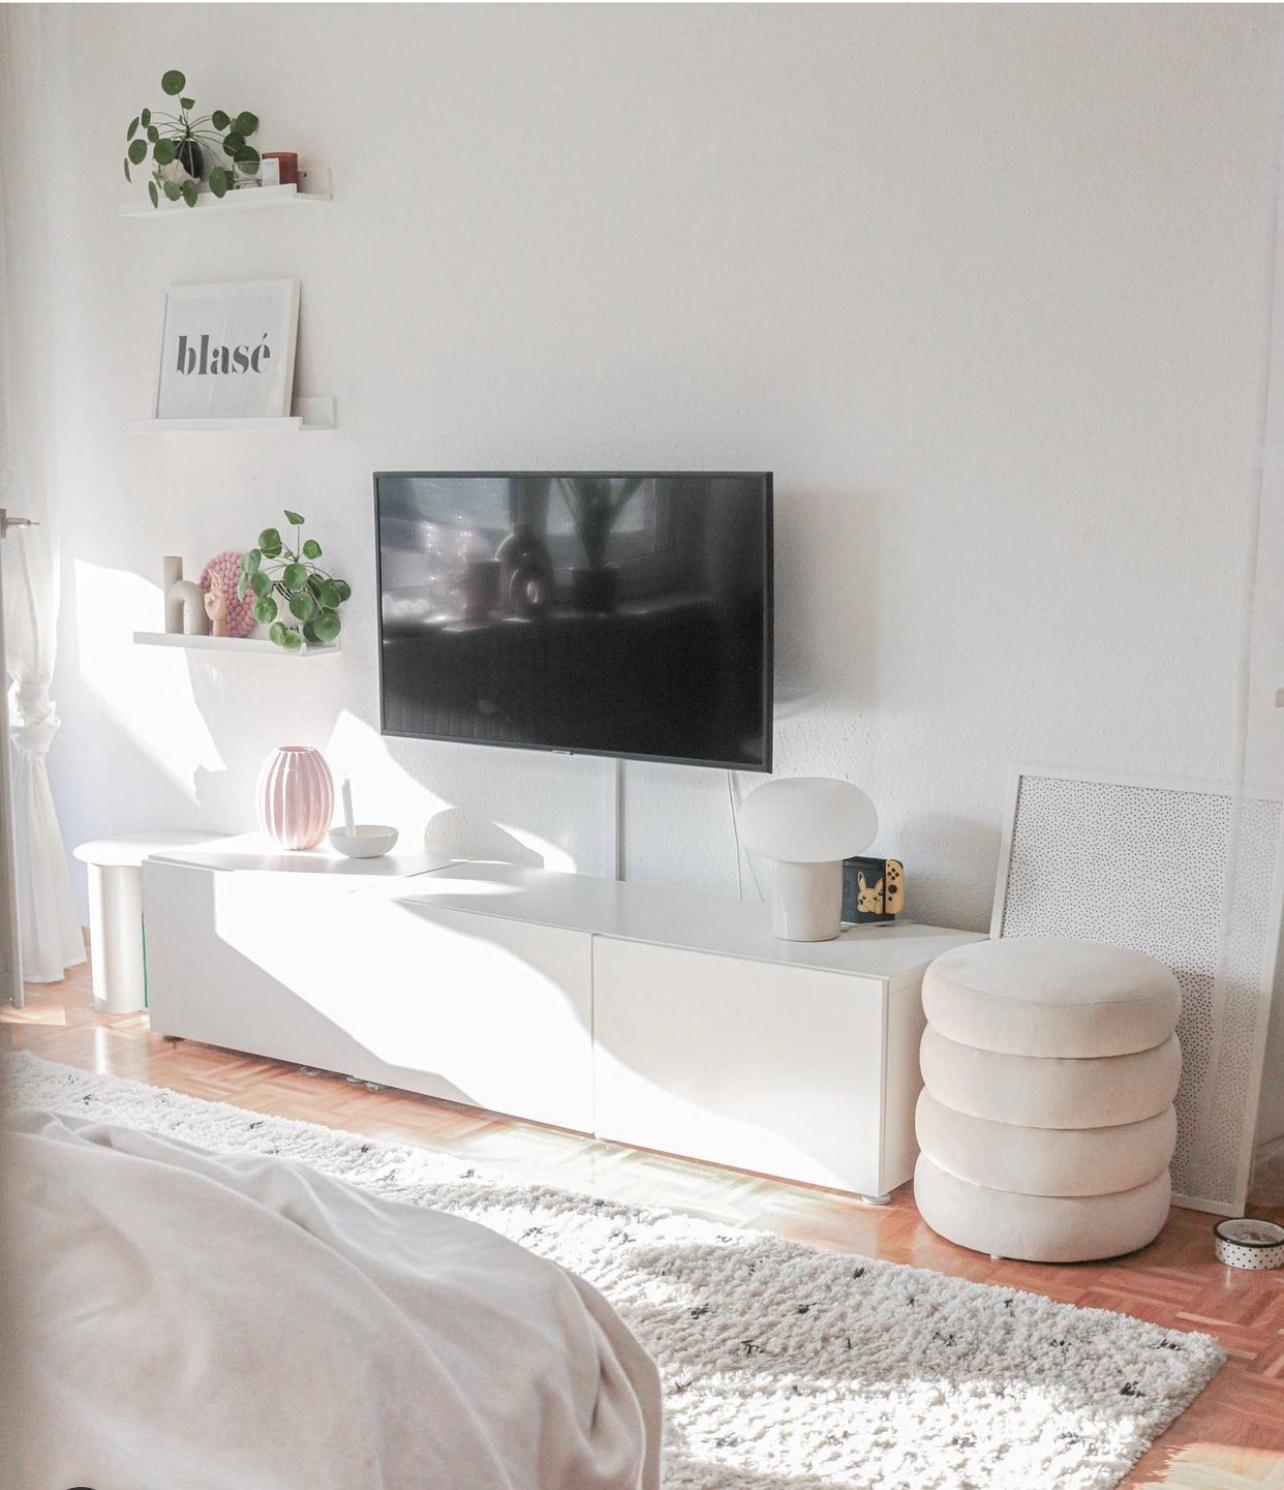 Wie schön, wenn die Sonne rein scheint 🥰
#scandinavianhome #whiteinterior #wohnzimmer #livingroom #cozyhome #besta 